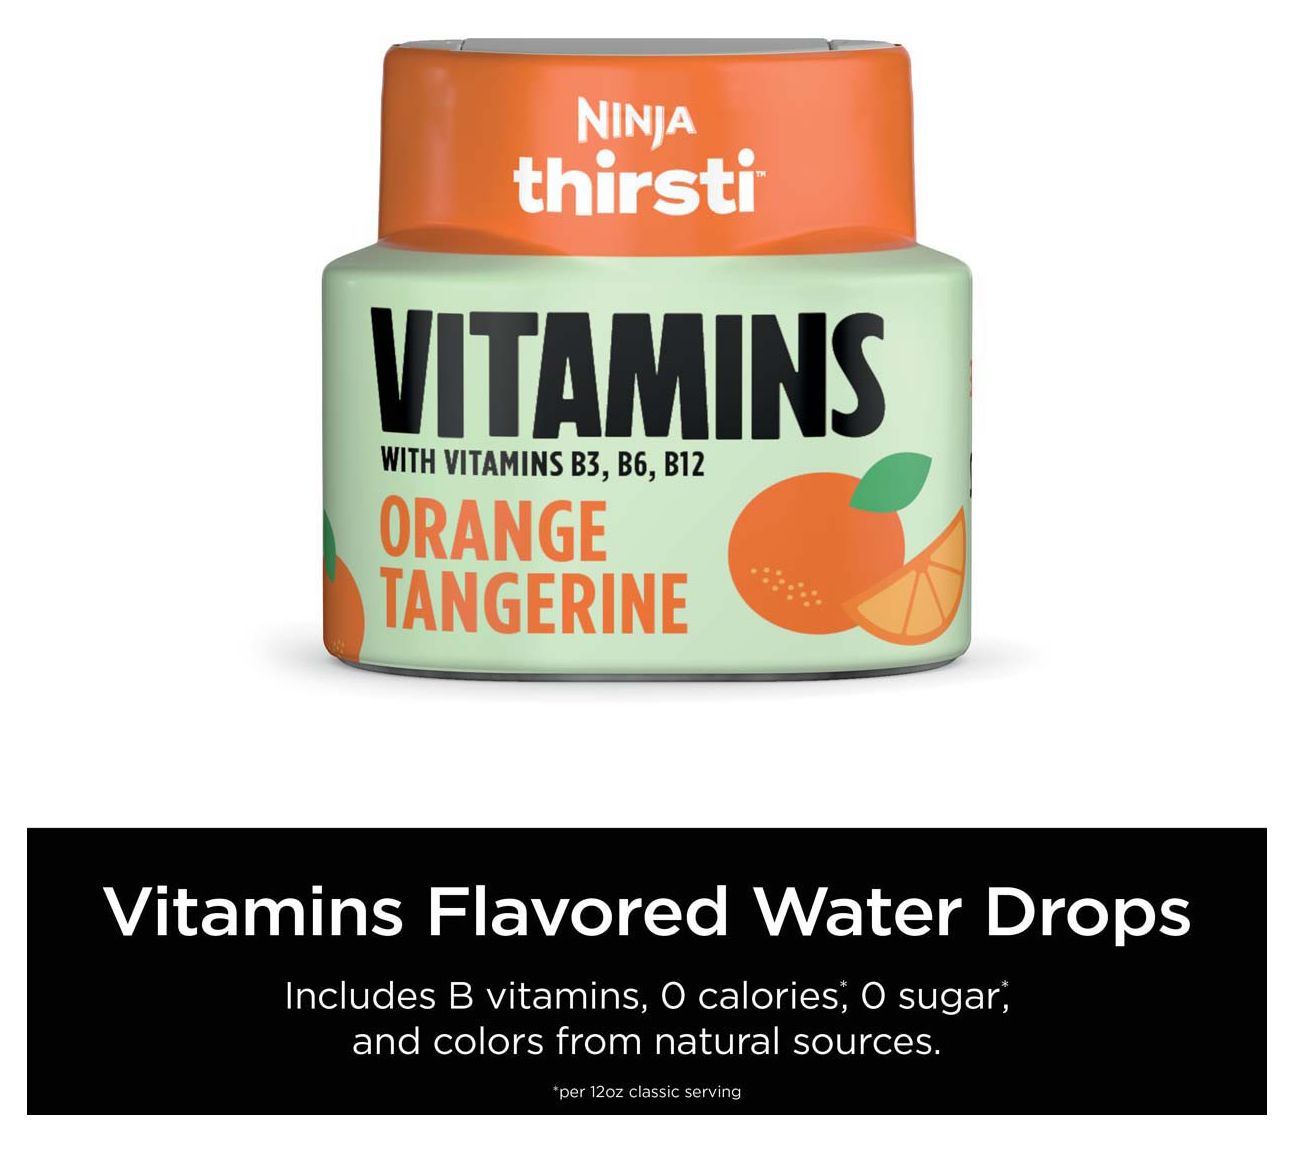 What Does Ninja Thirsti Flavored Water Taste Like?